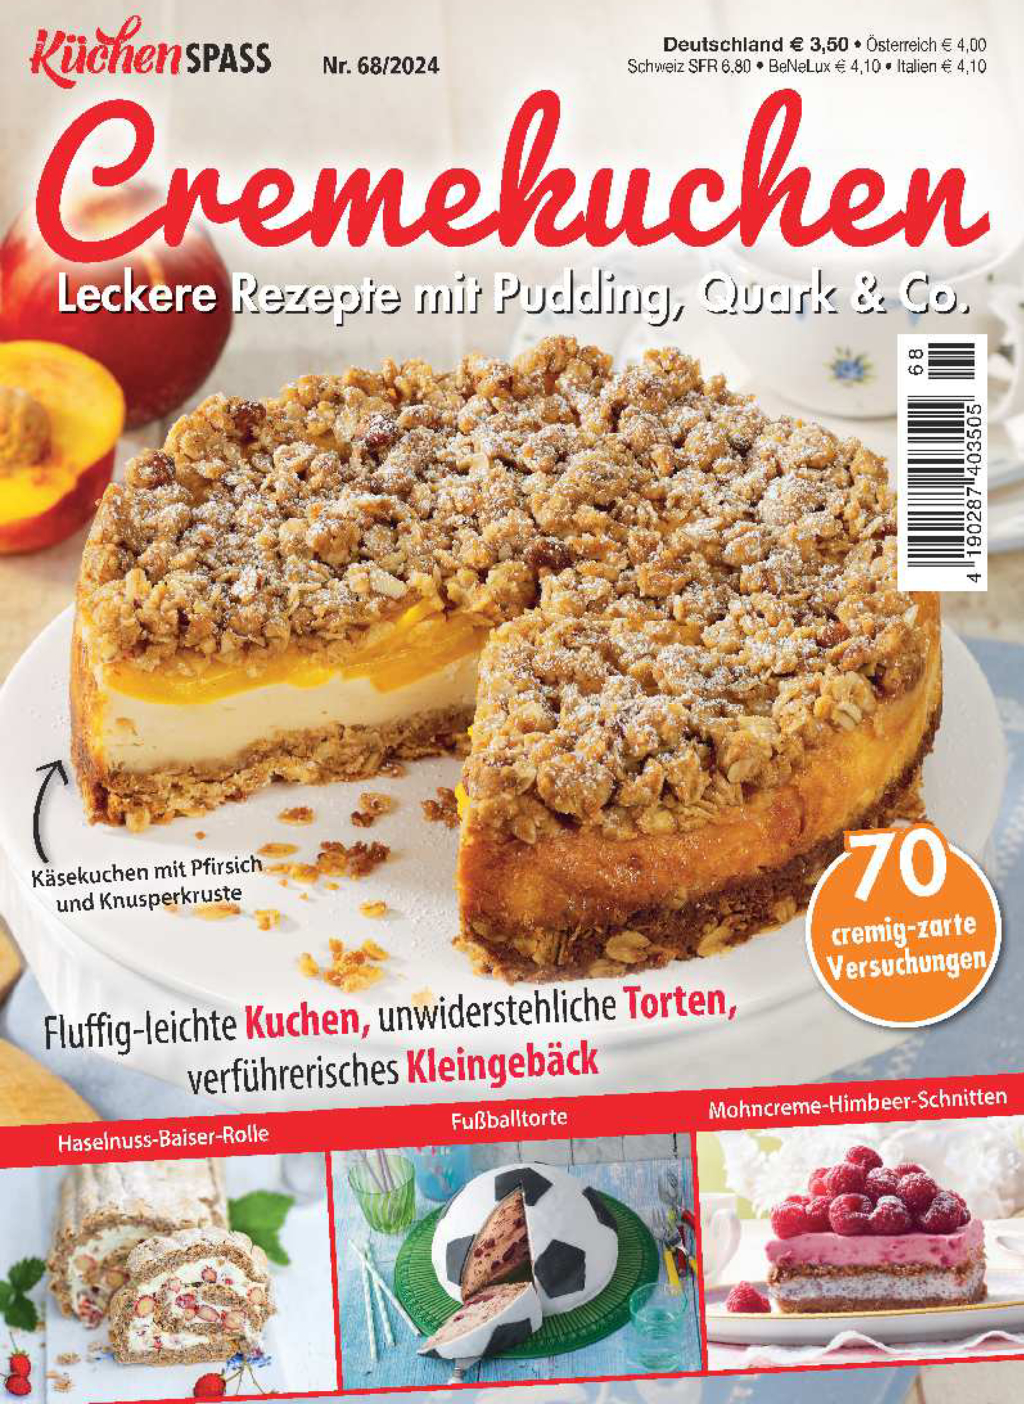 KüchenSPASS 68/2024 - Cremekuchen